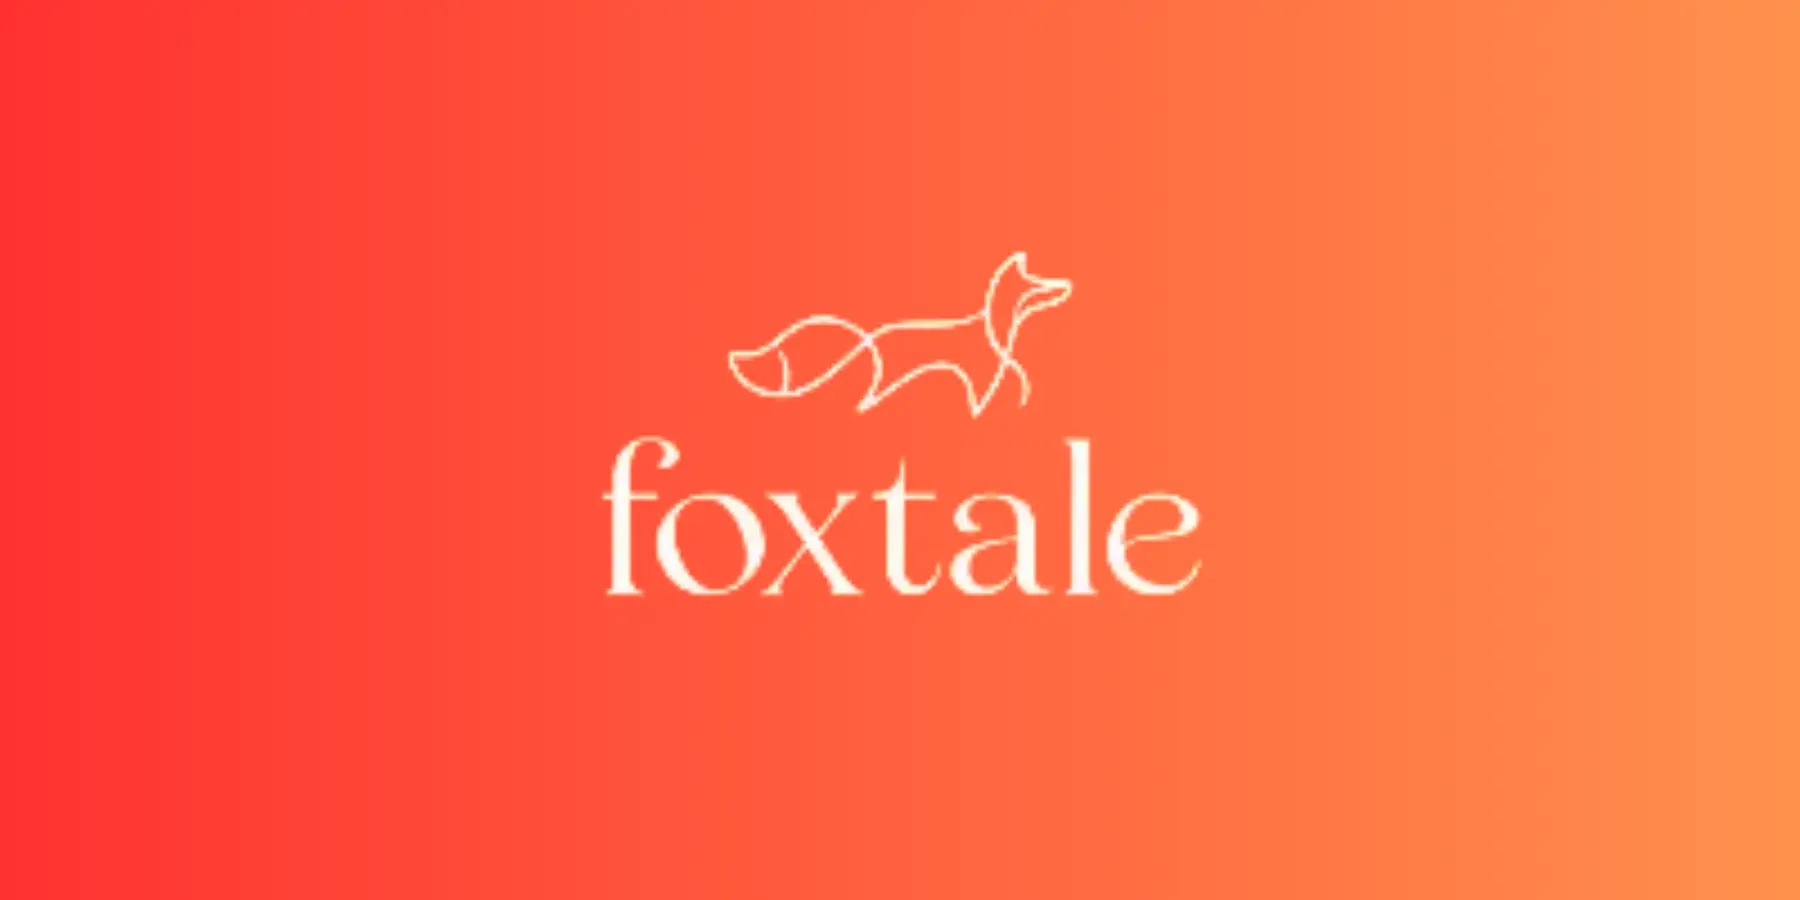 Foxtale logo